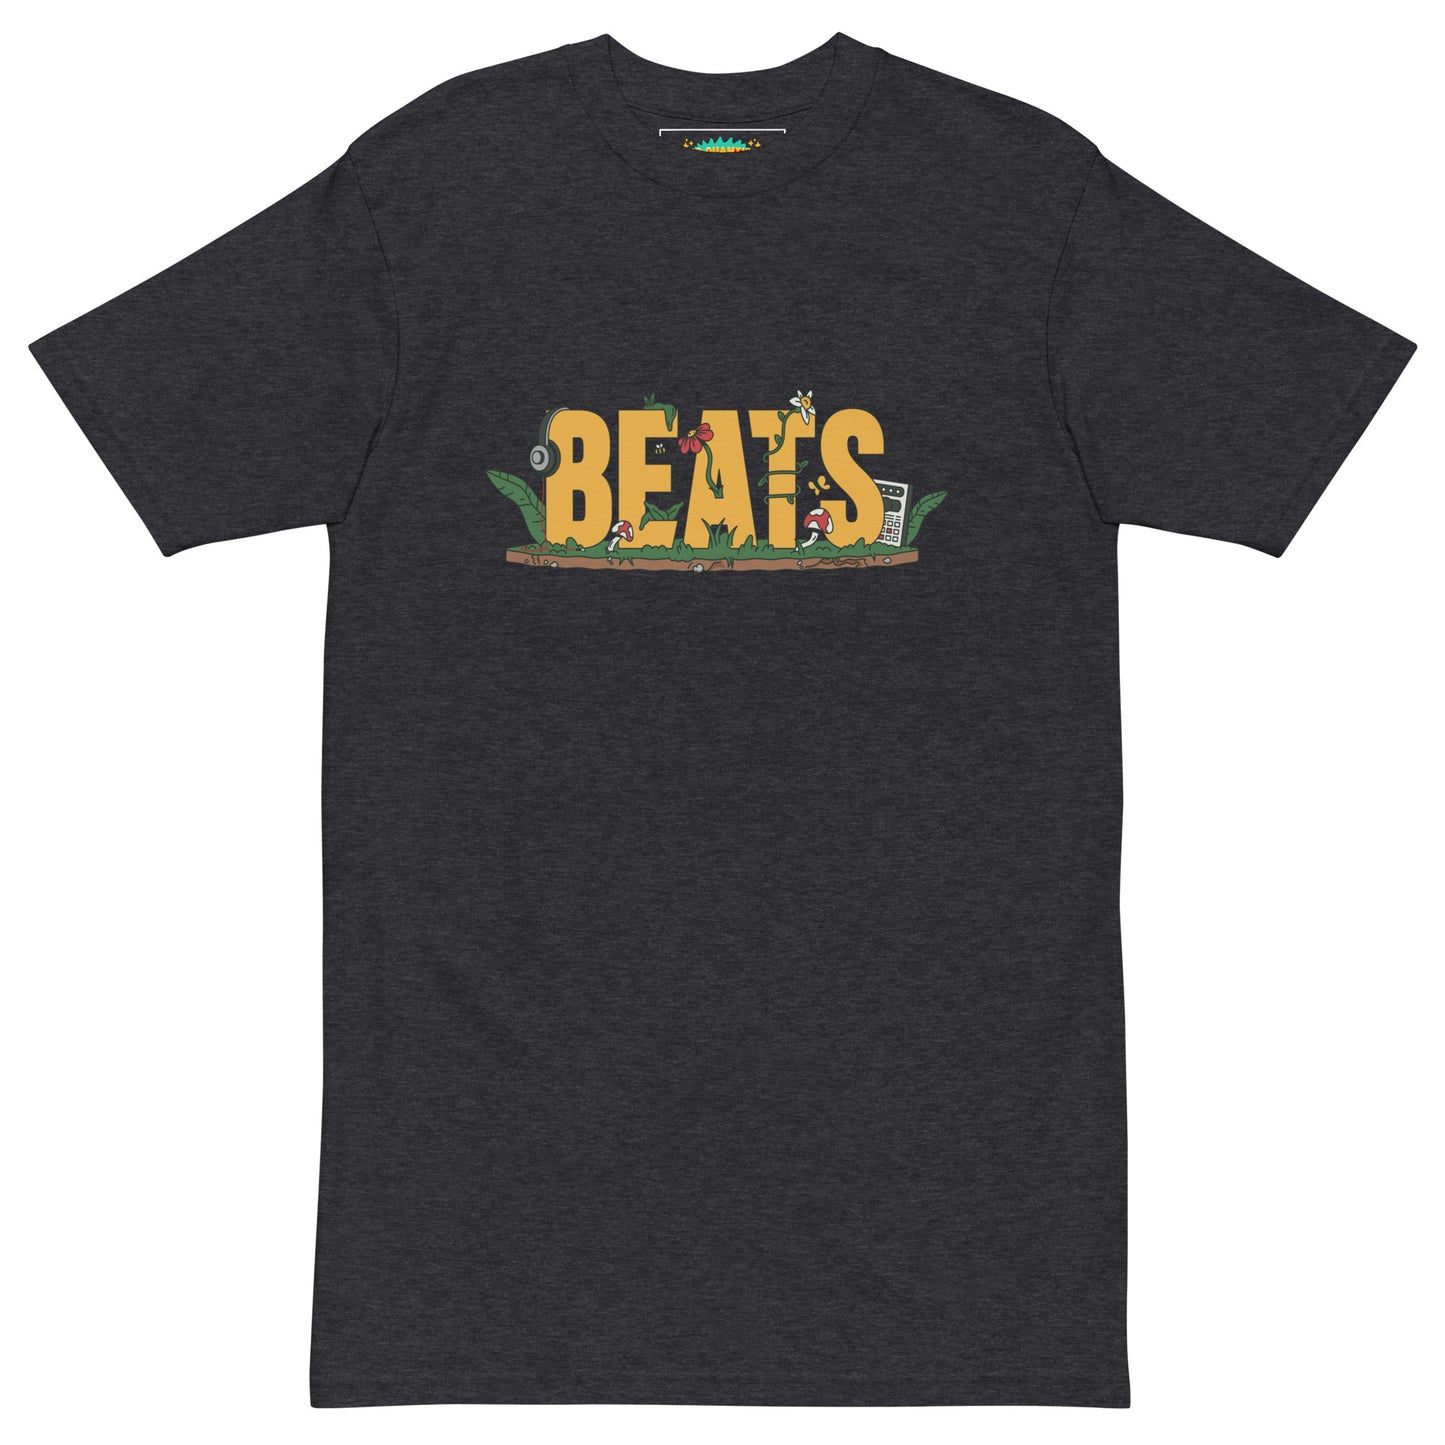 "BEATS" t-shirt